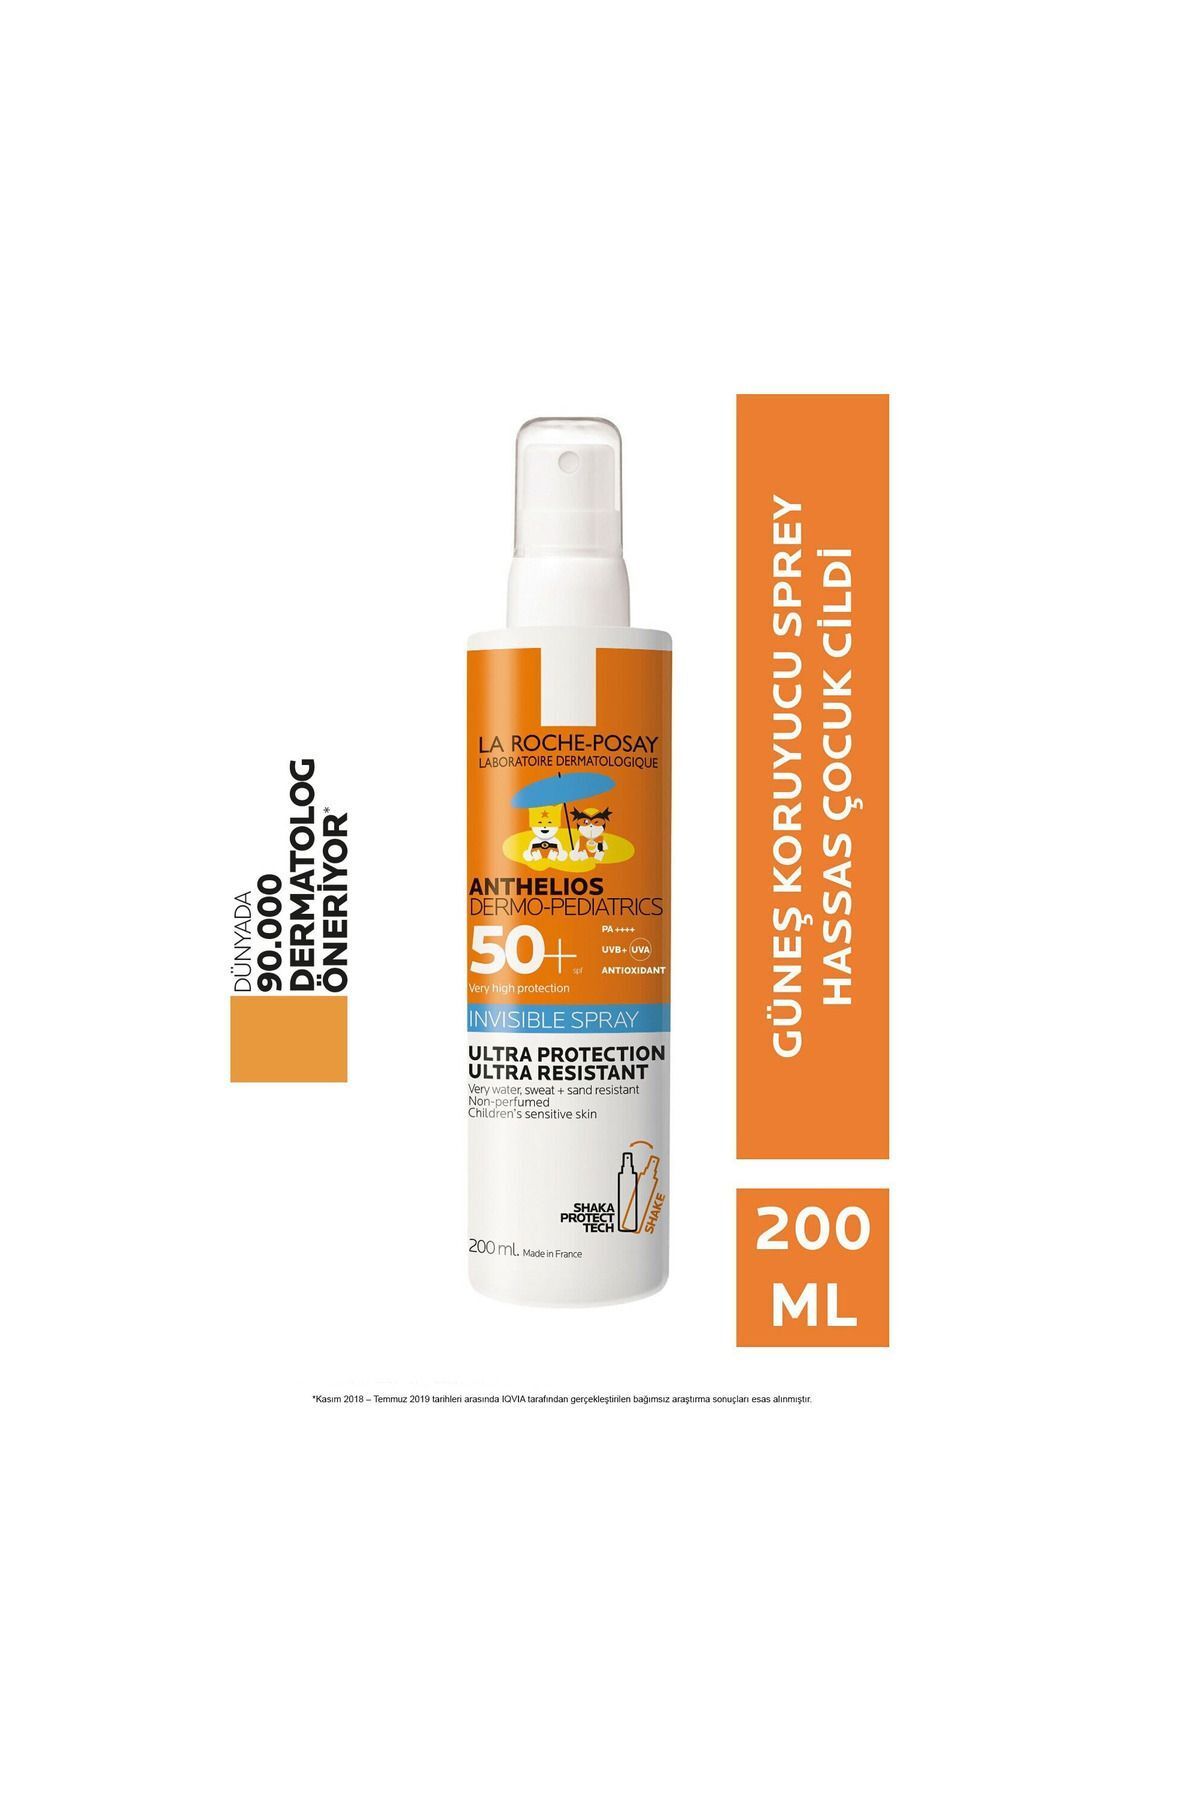 La Roche Posay Çocuklar için hassas cilde kızılötesi, yatıştırıcı yüksek güneş koruması / DermoCos